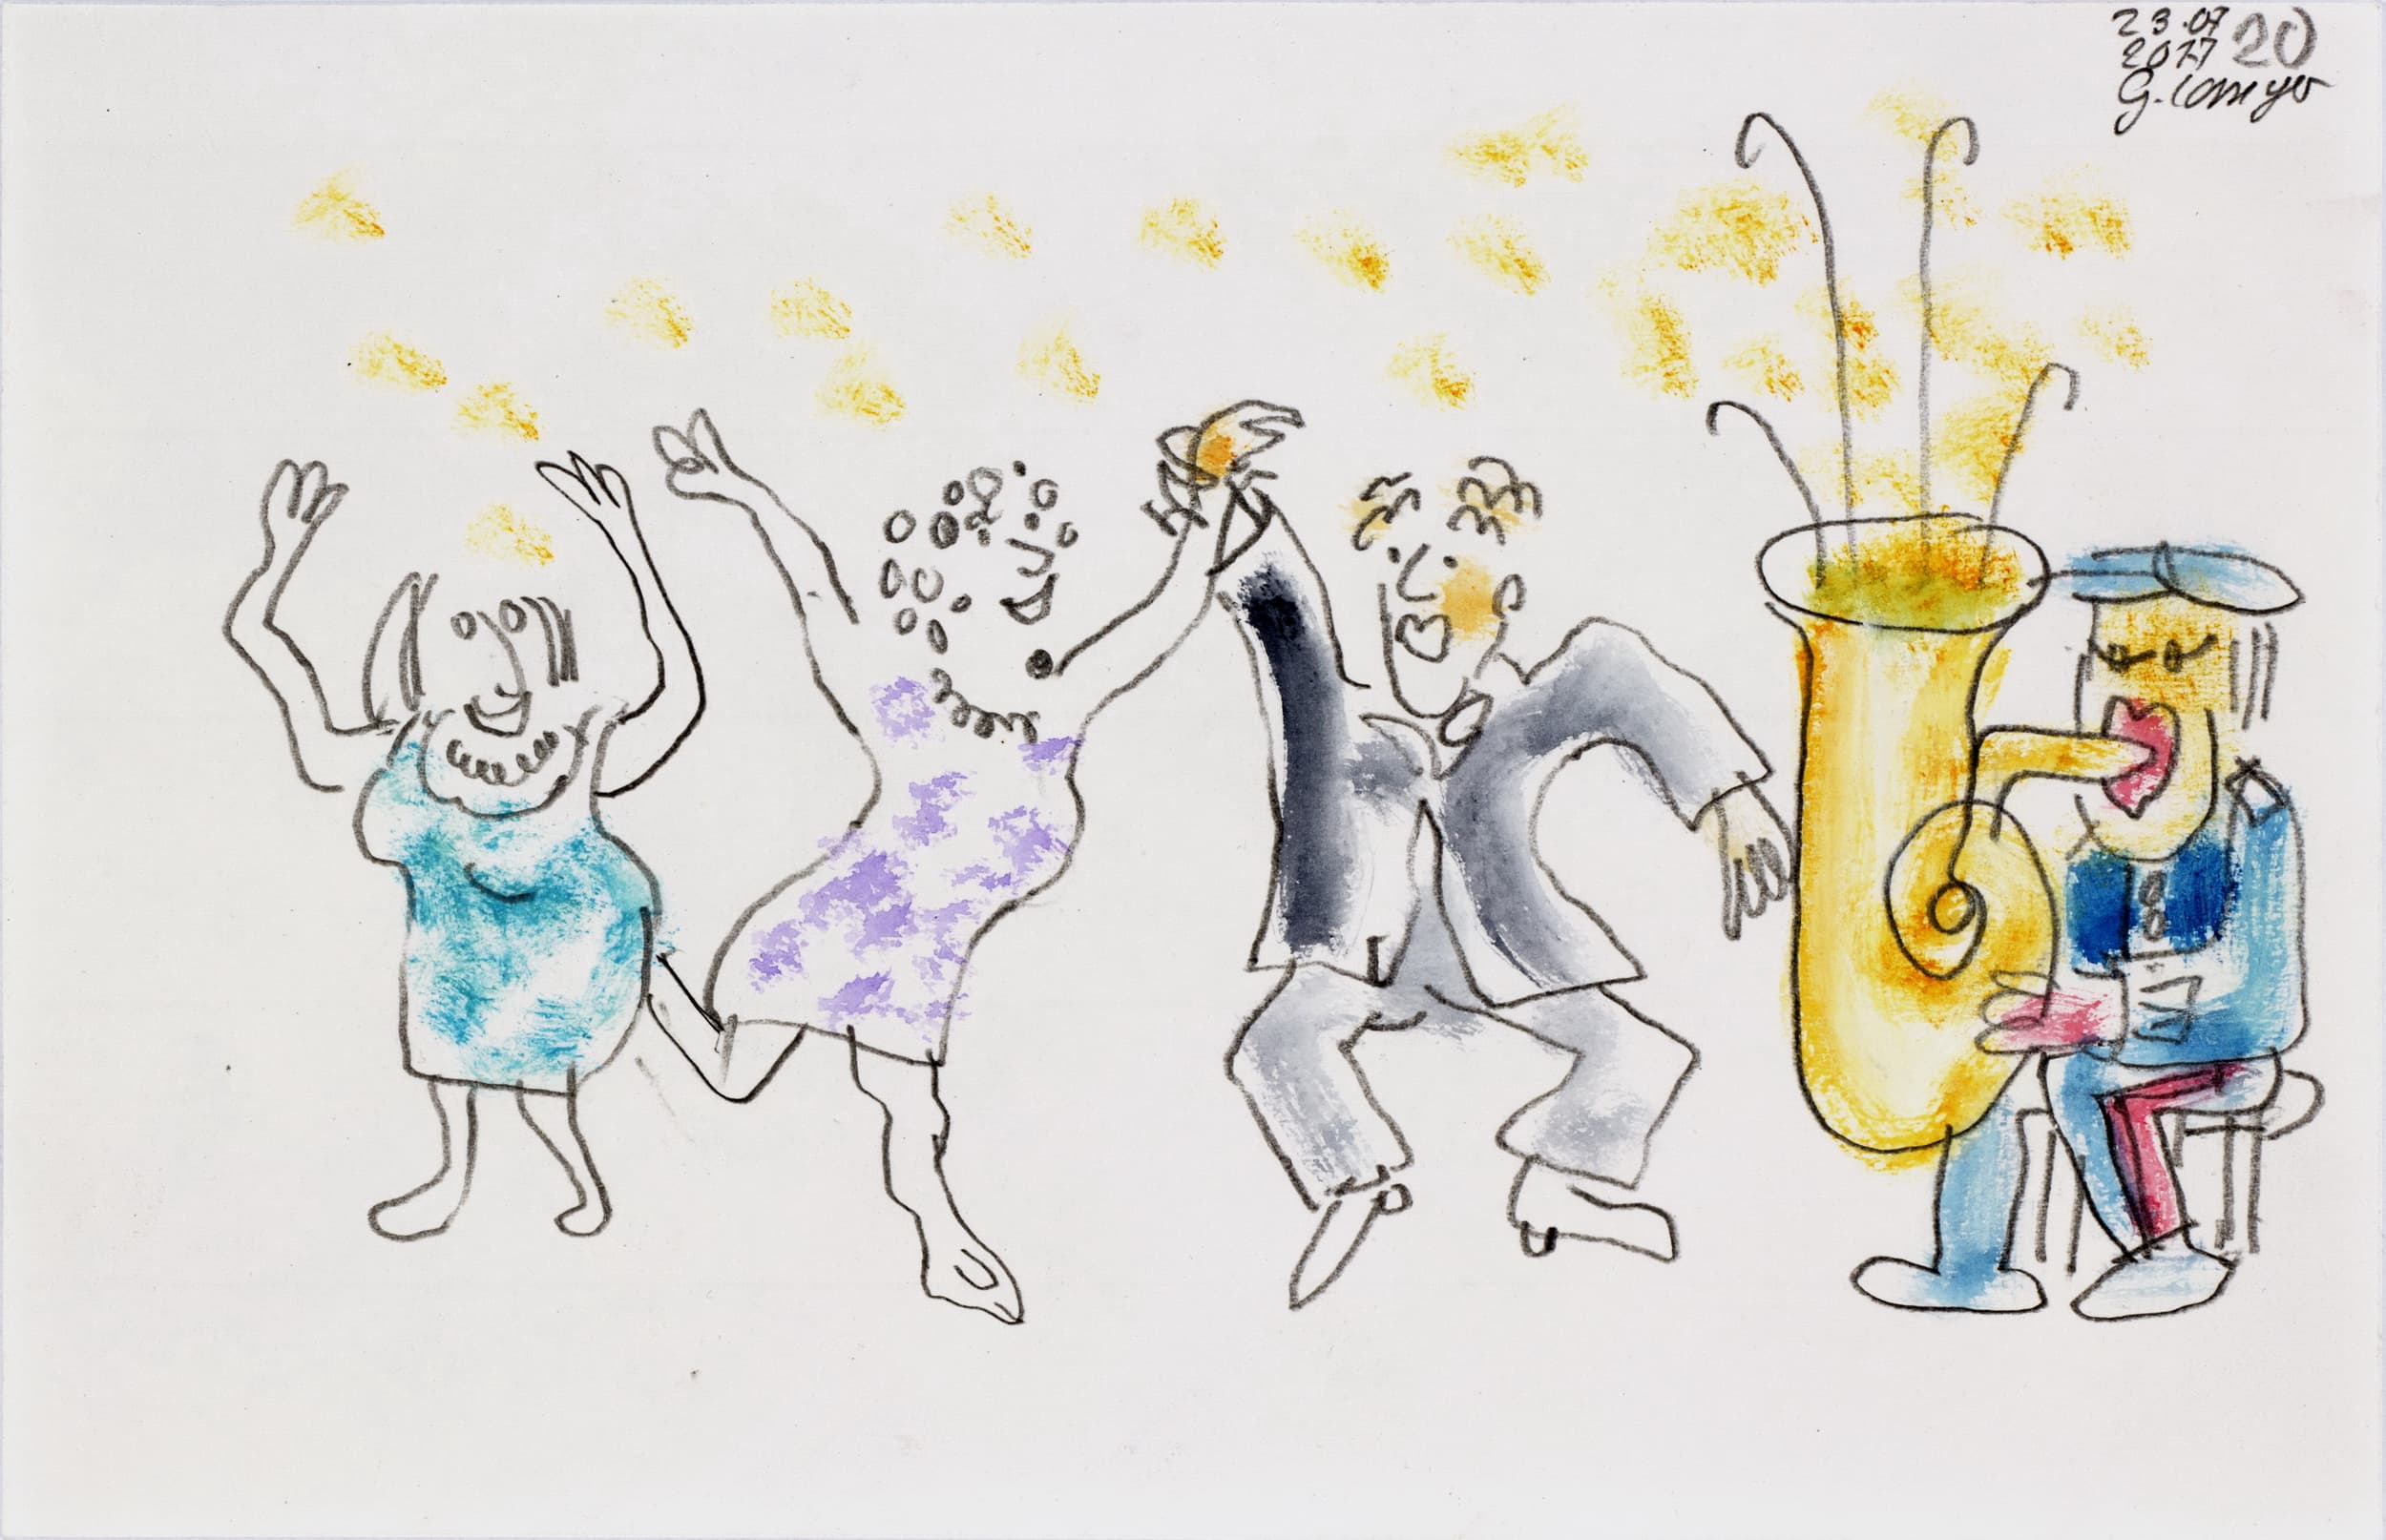 Gunter Langer, Karikatur Tanz, Illustration zur Kurzgeschichte "Sepp" von Olav Stoy, 2017, Gouache Wasserfarbe Bleistift, Karton, 19 x 29 cm